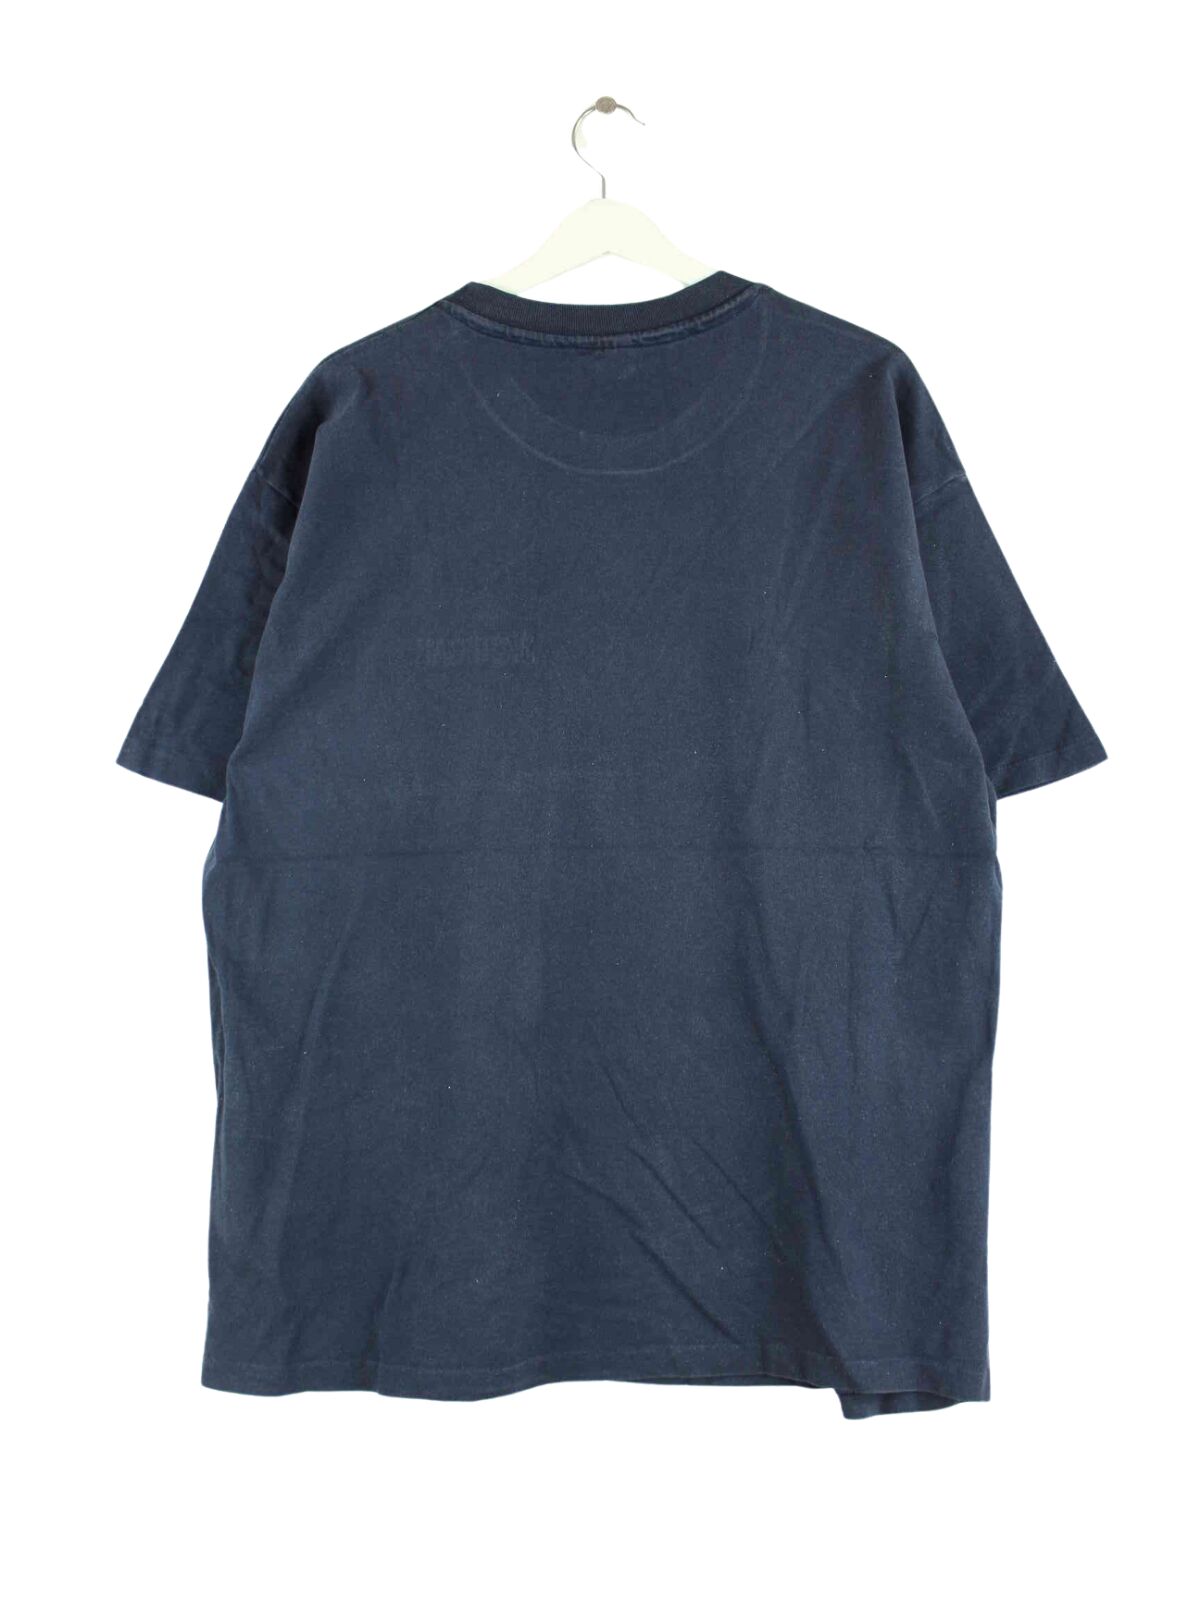 Champion Michigan Embrodiered Single Stitched T-Shirt Blau XL (back image)